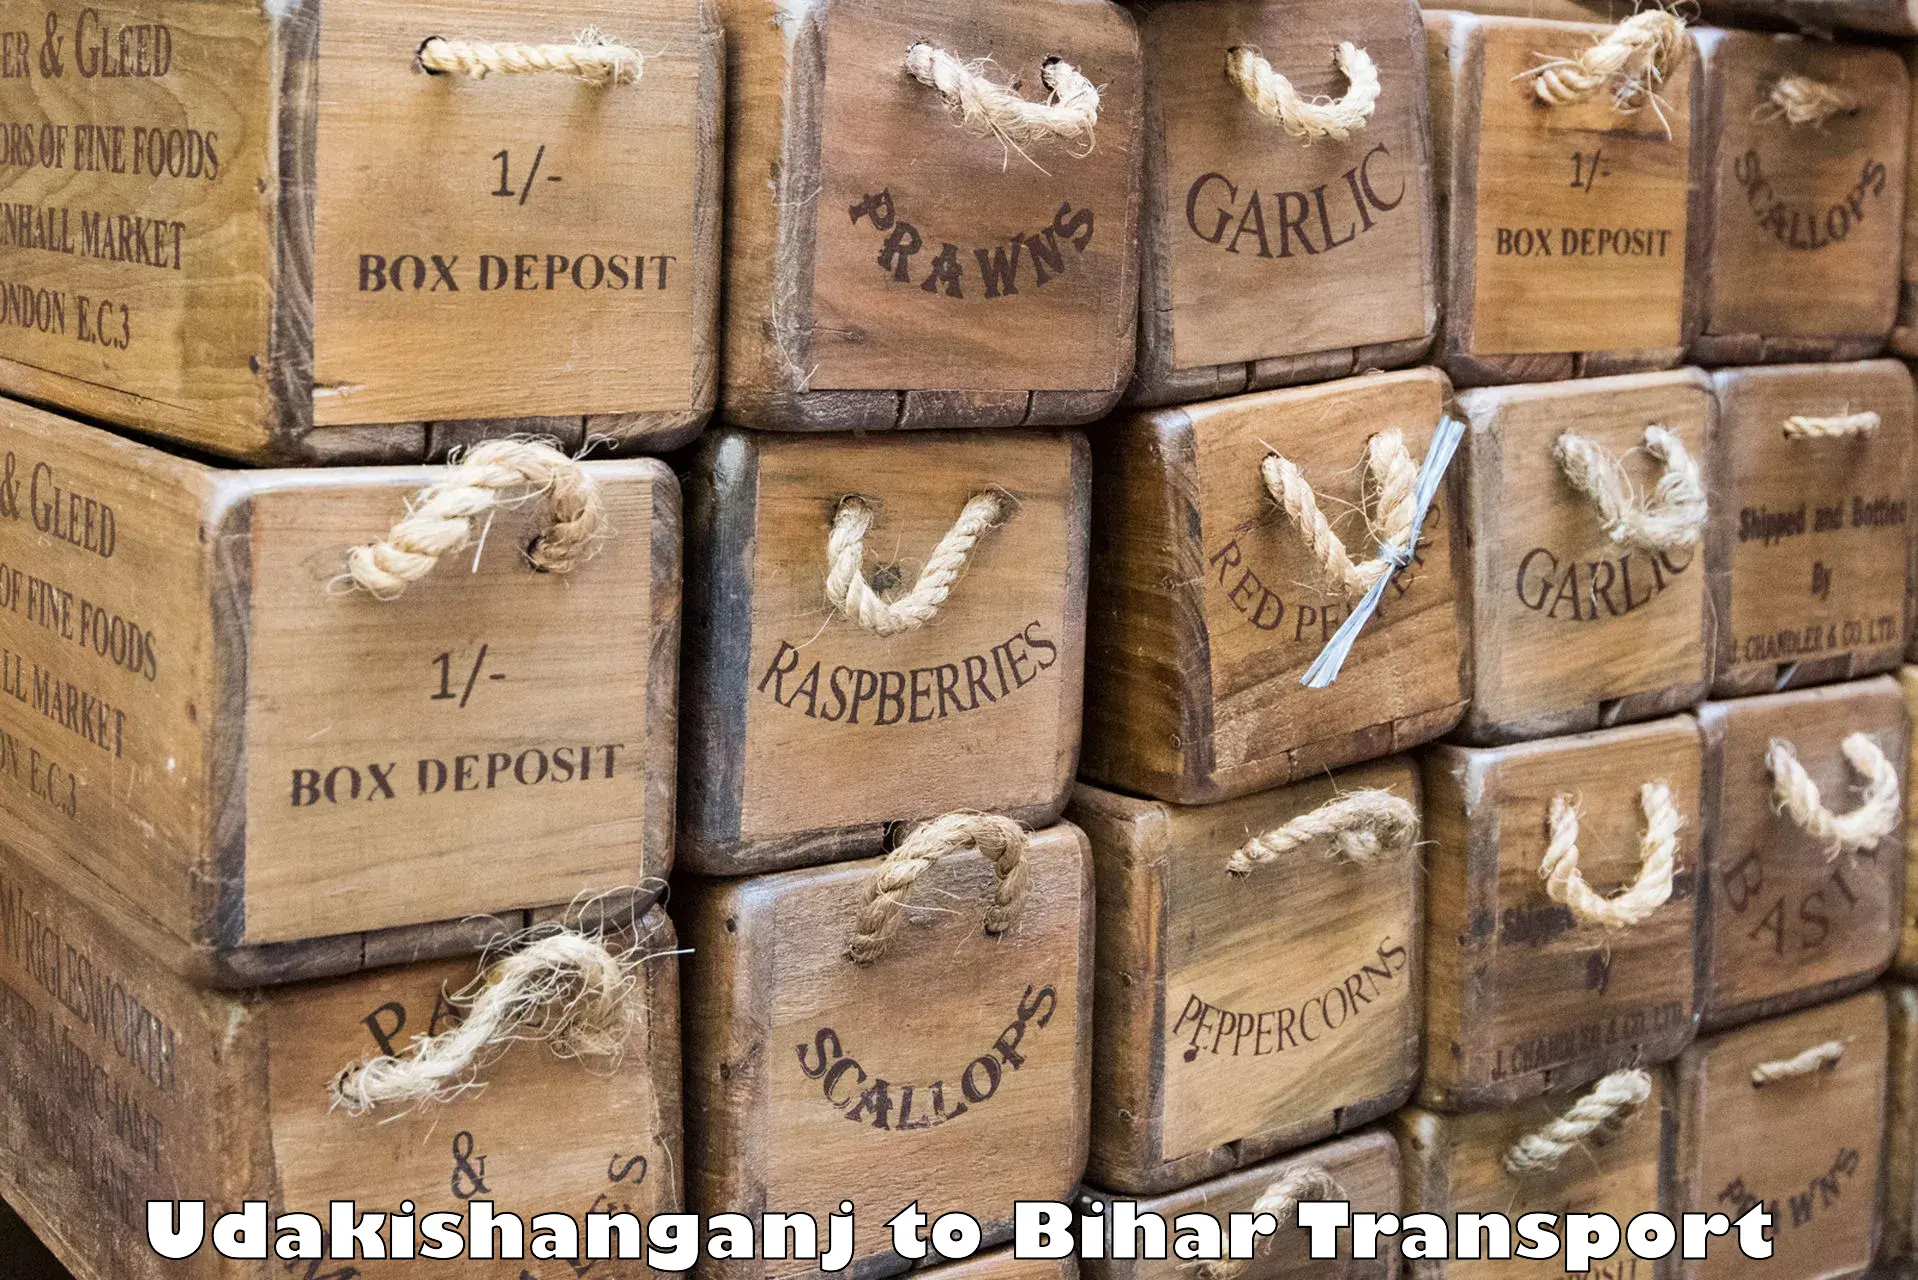 Transport services Udakishanganj to Maheshkhunt